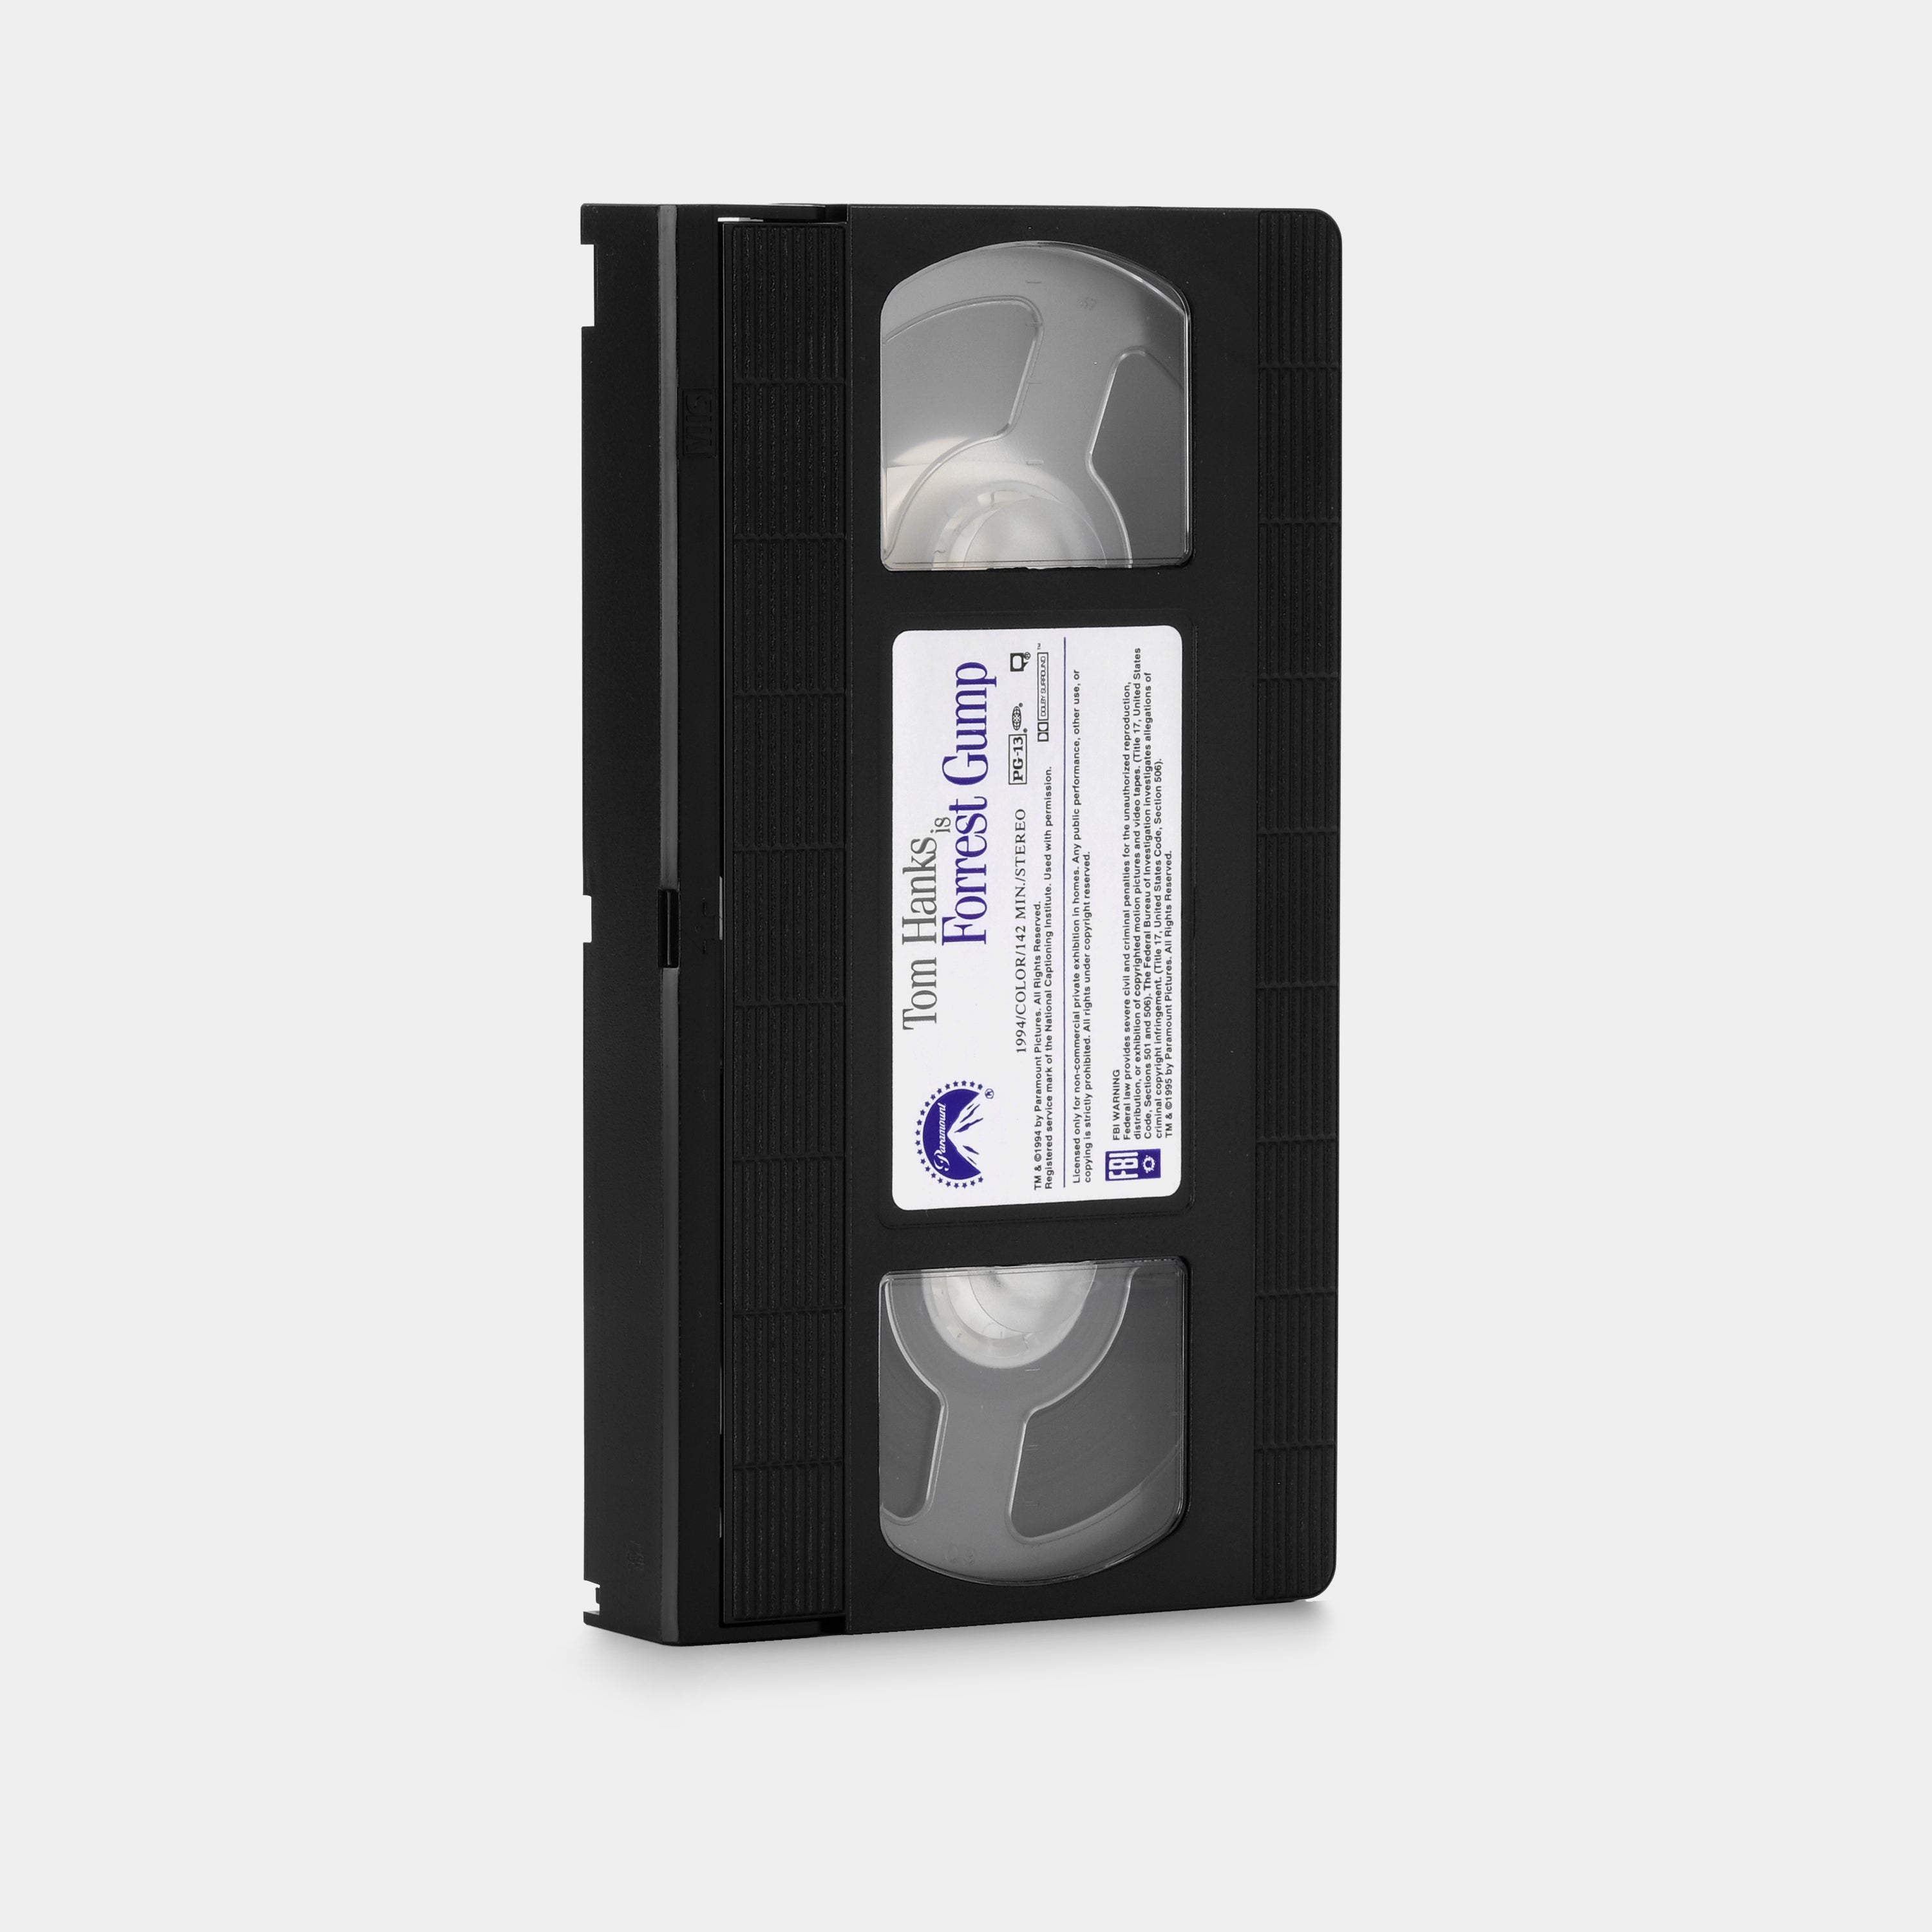 Forrest Gump VHS Tape